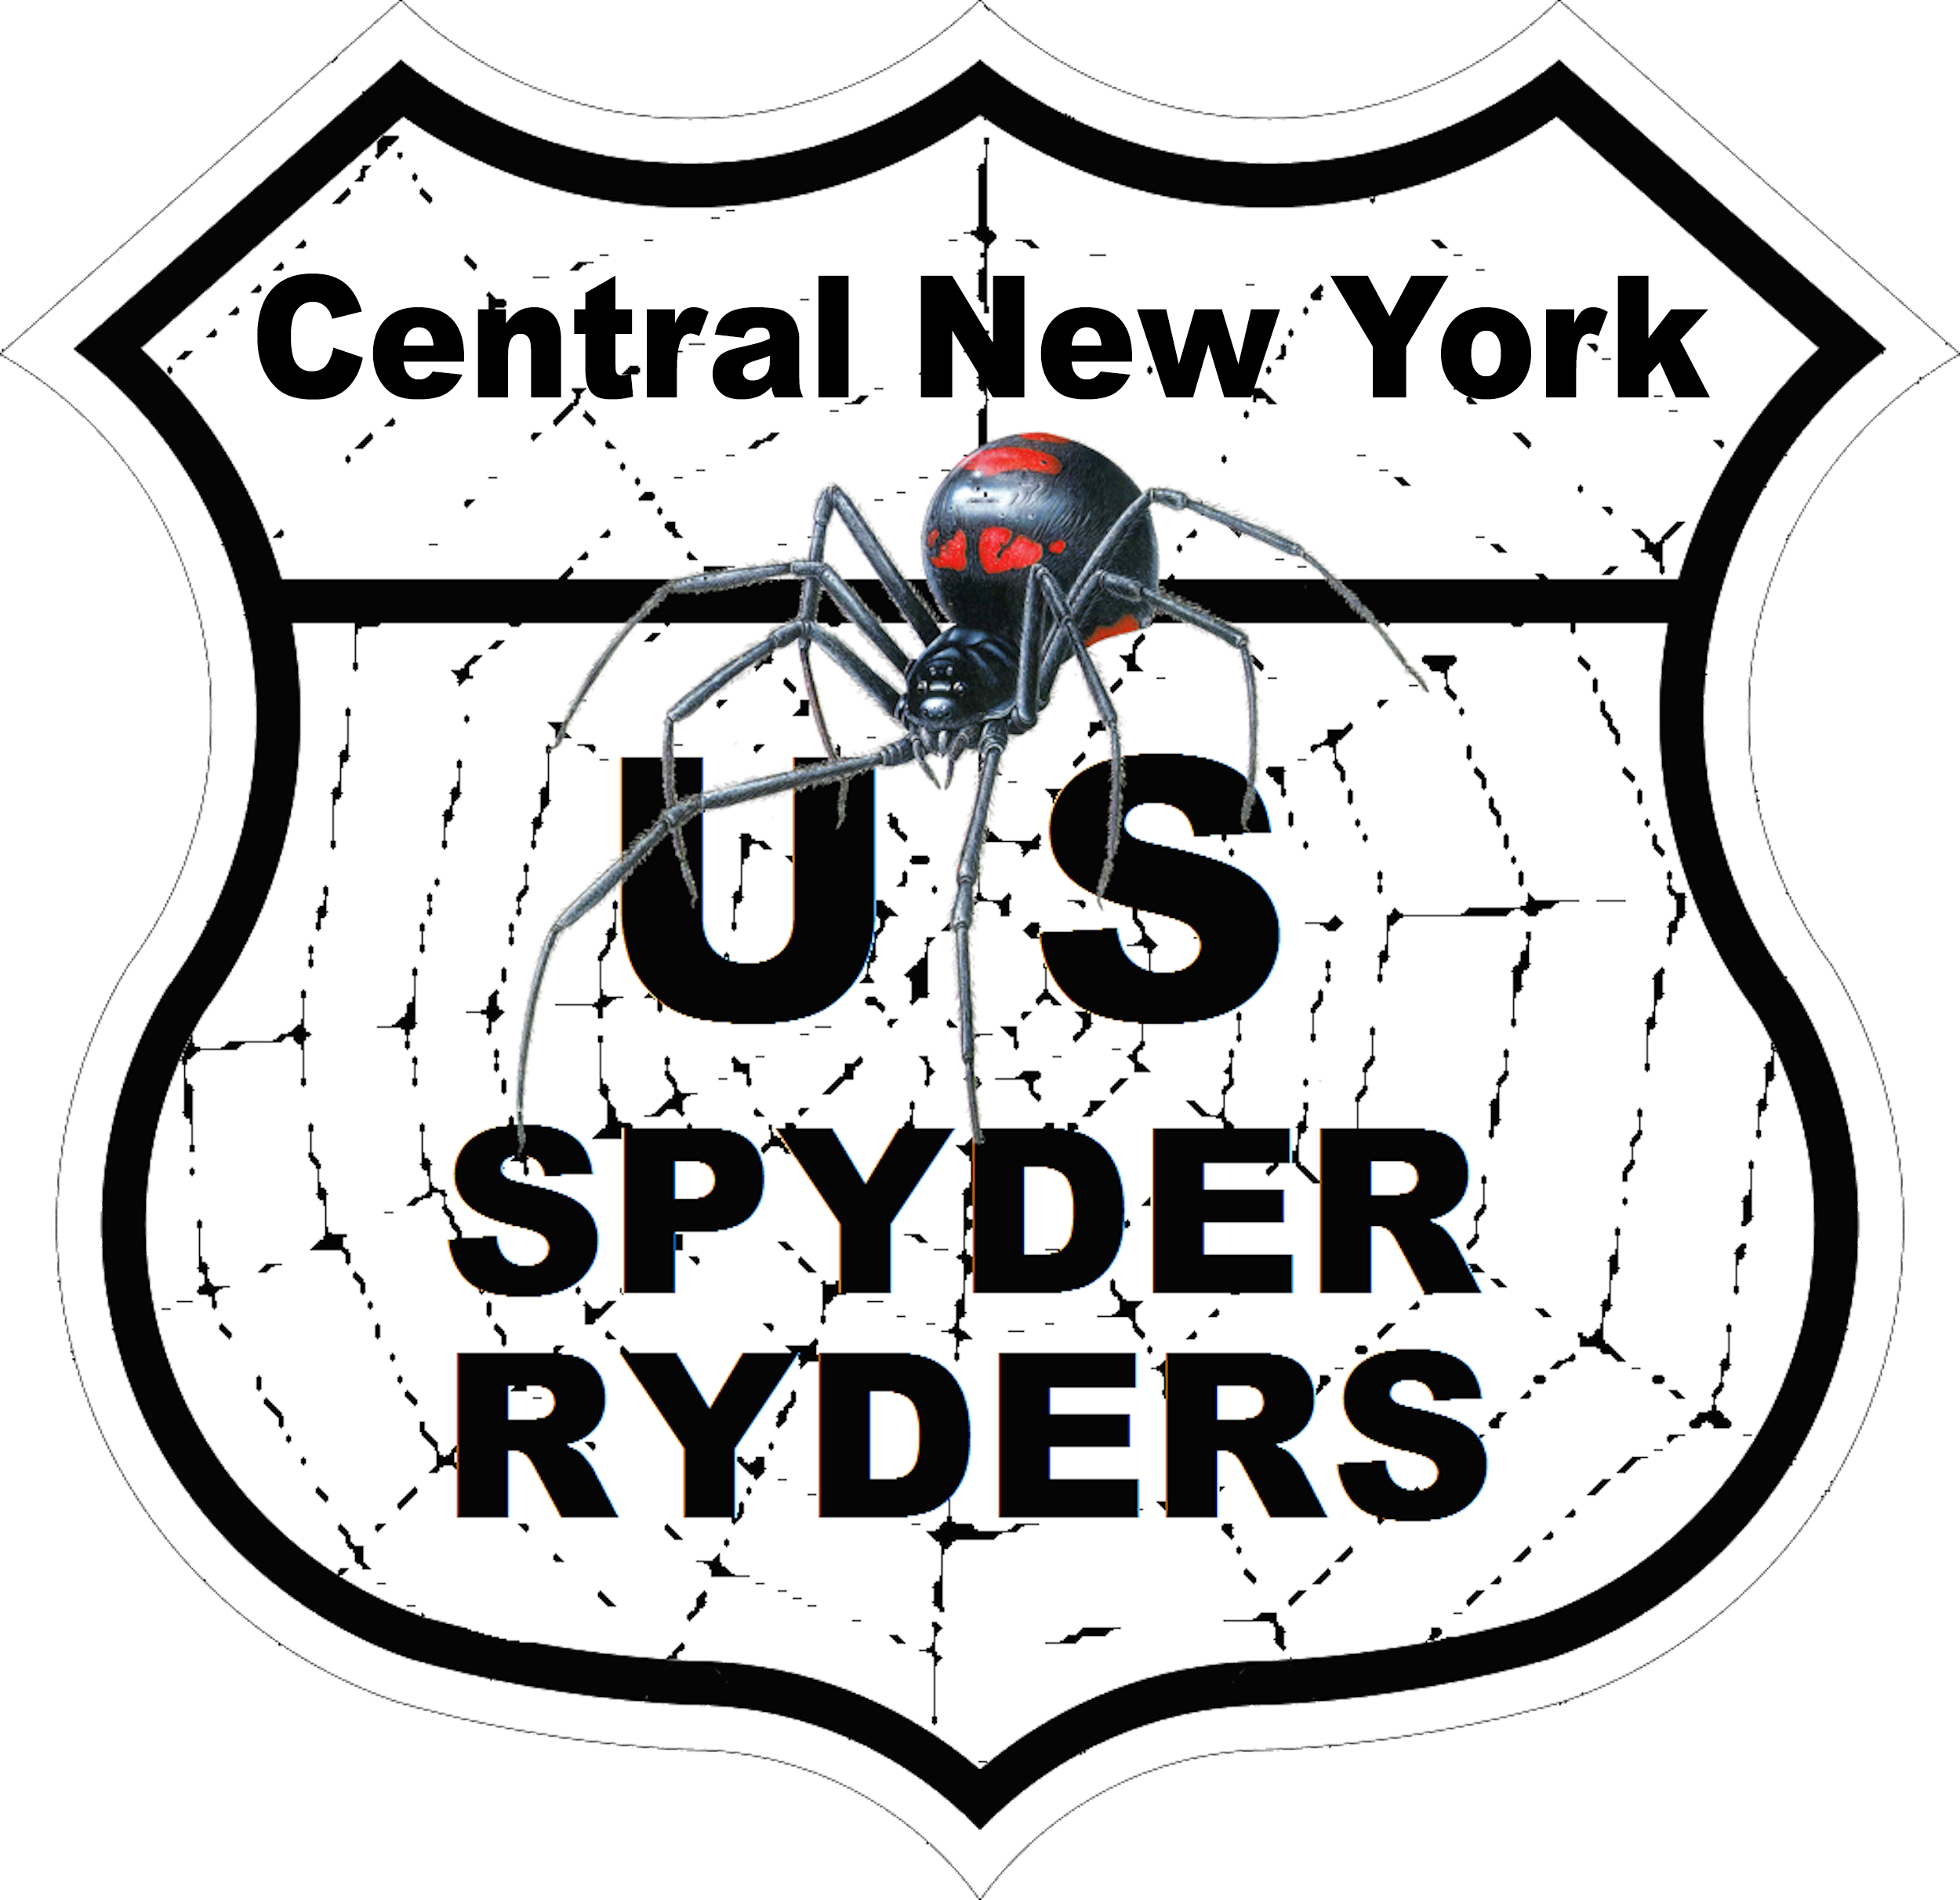 US_Spyder_Ryder_NY_Central_NY.png